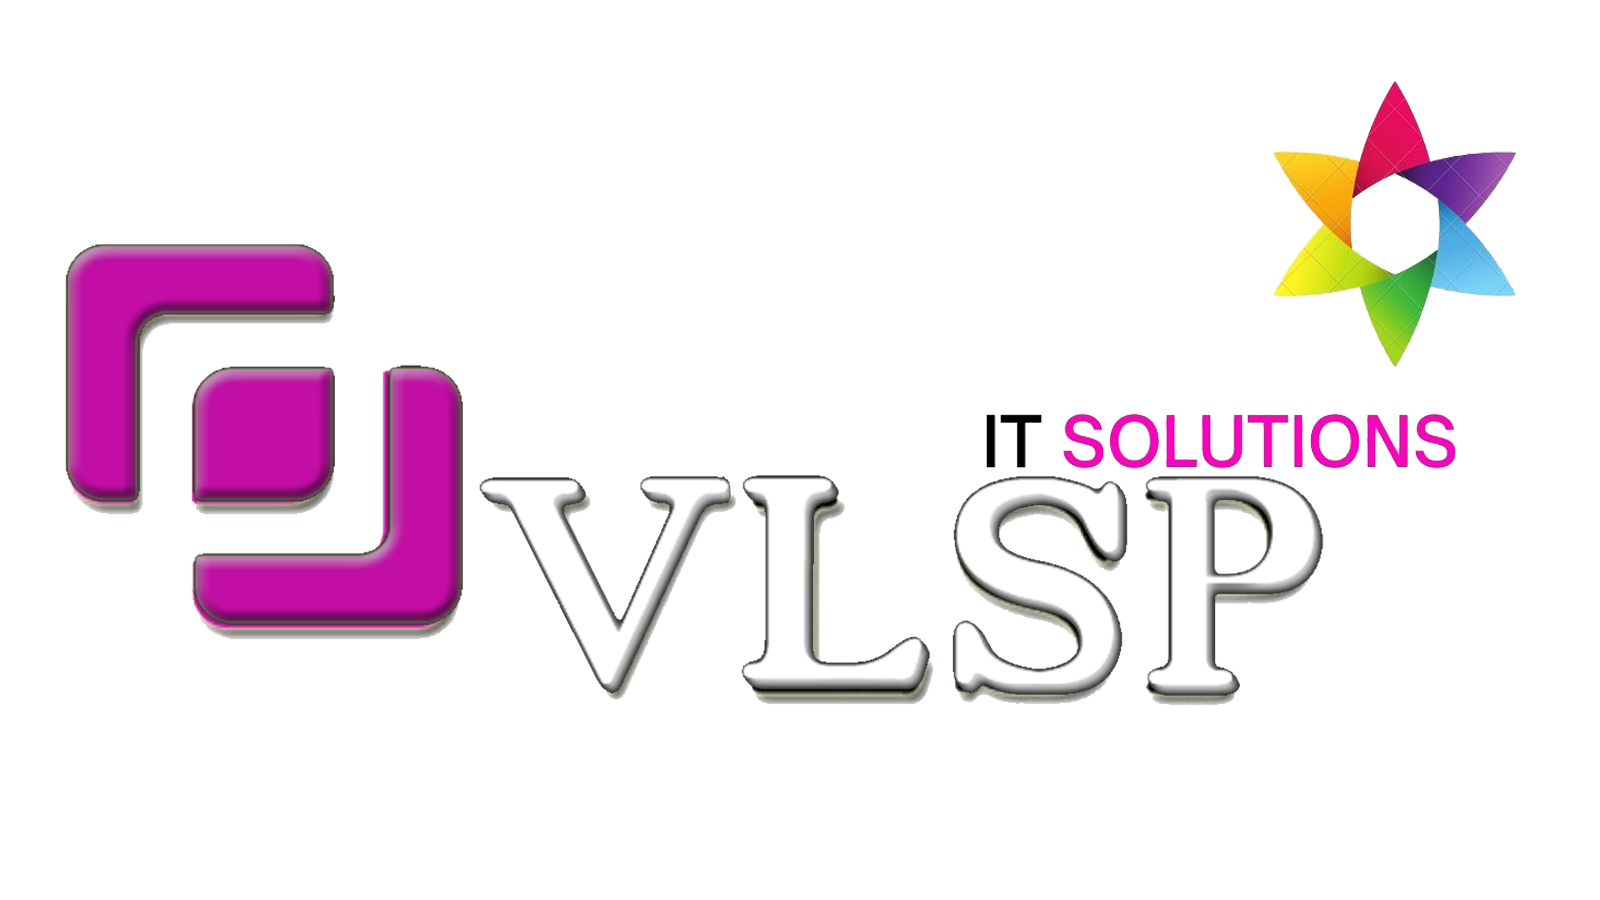 VLSP-IT-Solutions